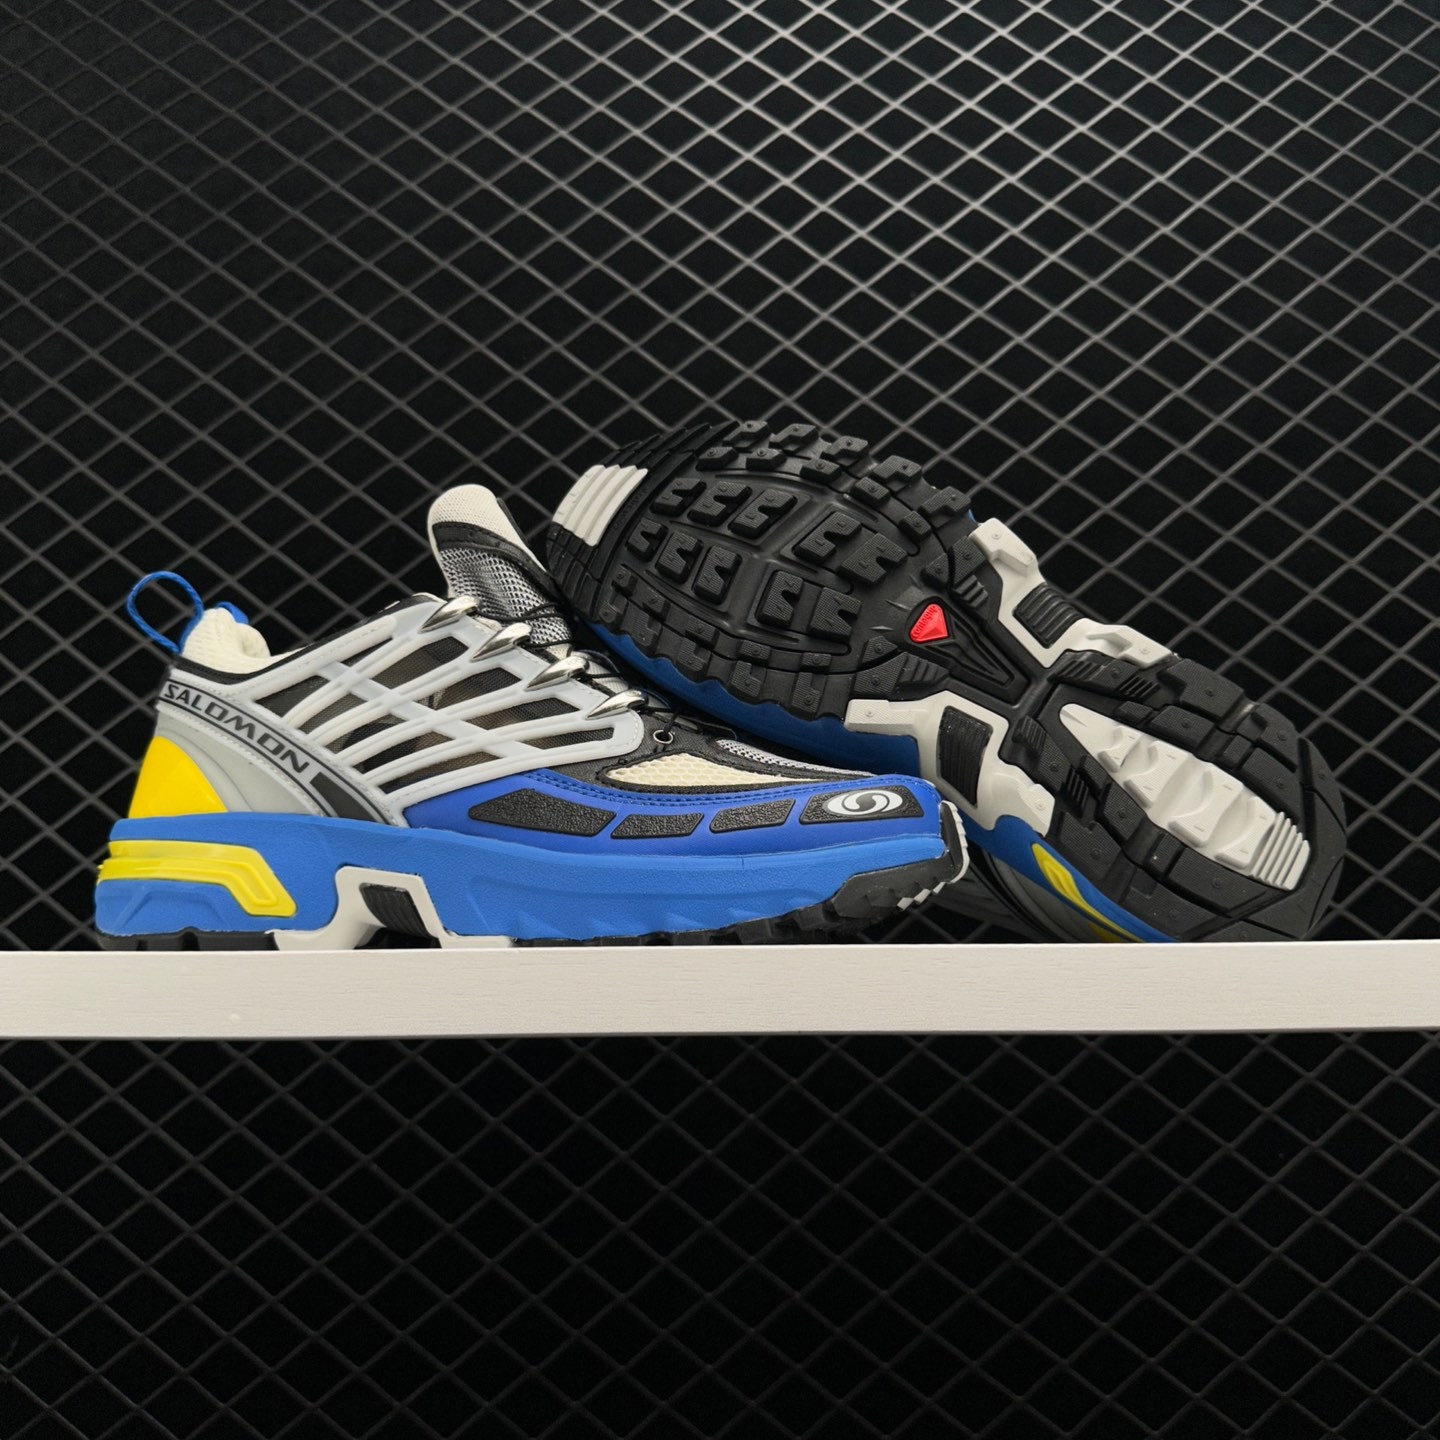 Salomon ACS Pro Lapis Blue L47218800: Lightweight and Versatile Sports Shoes